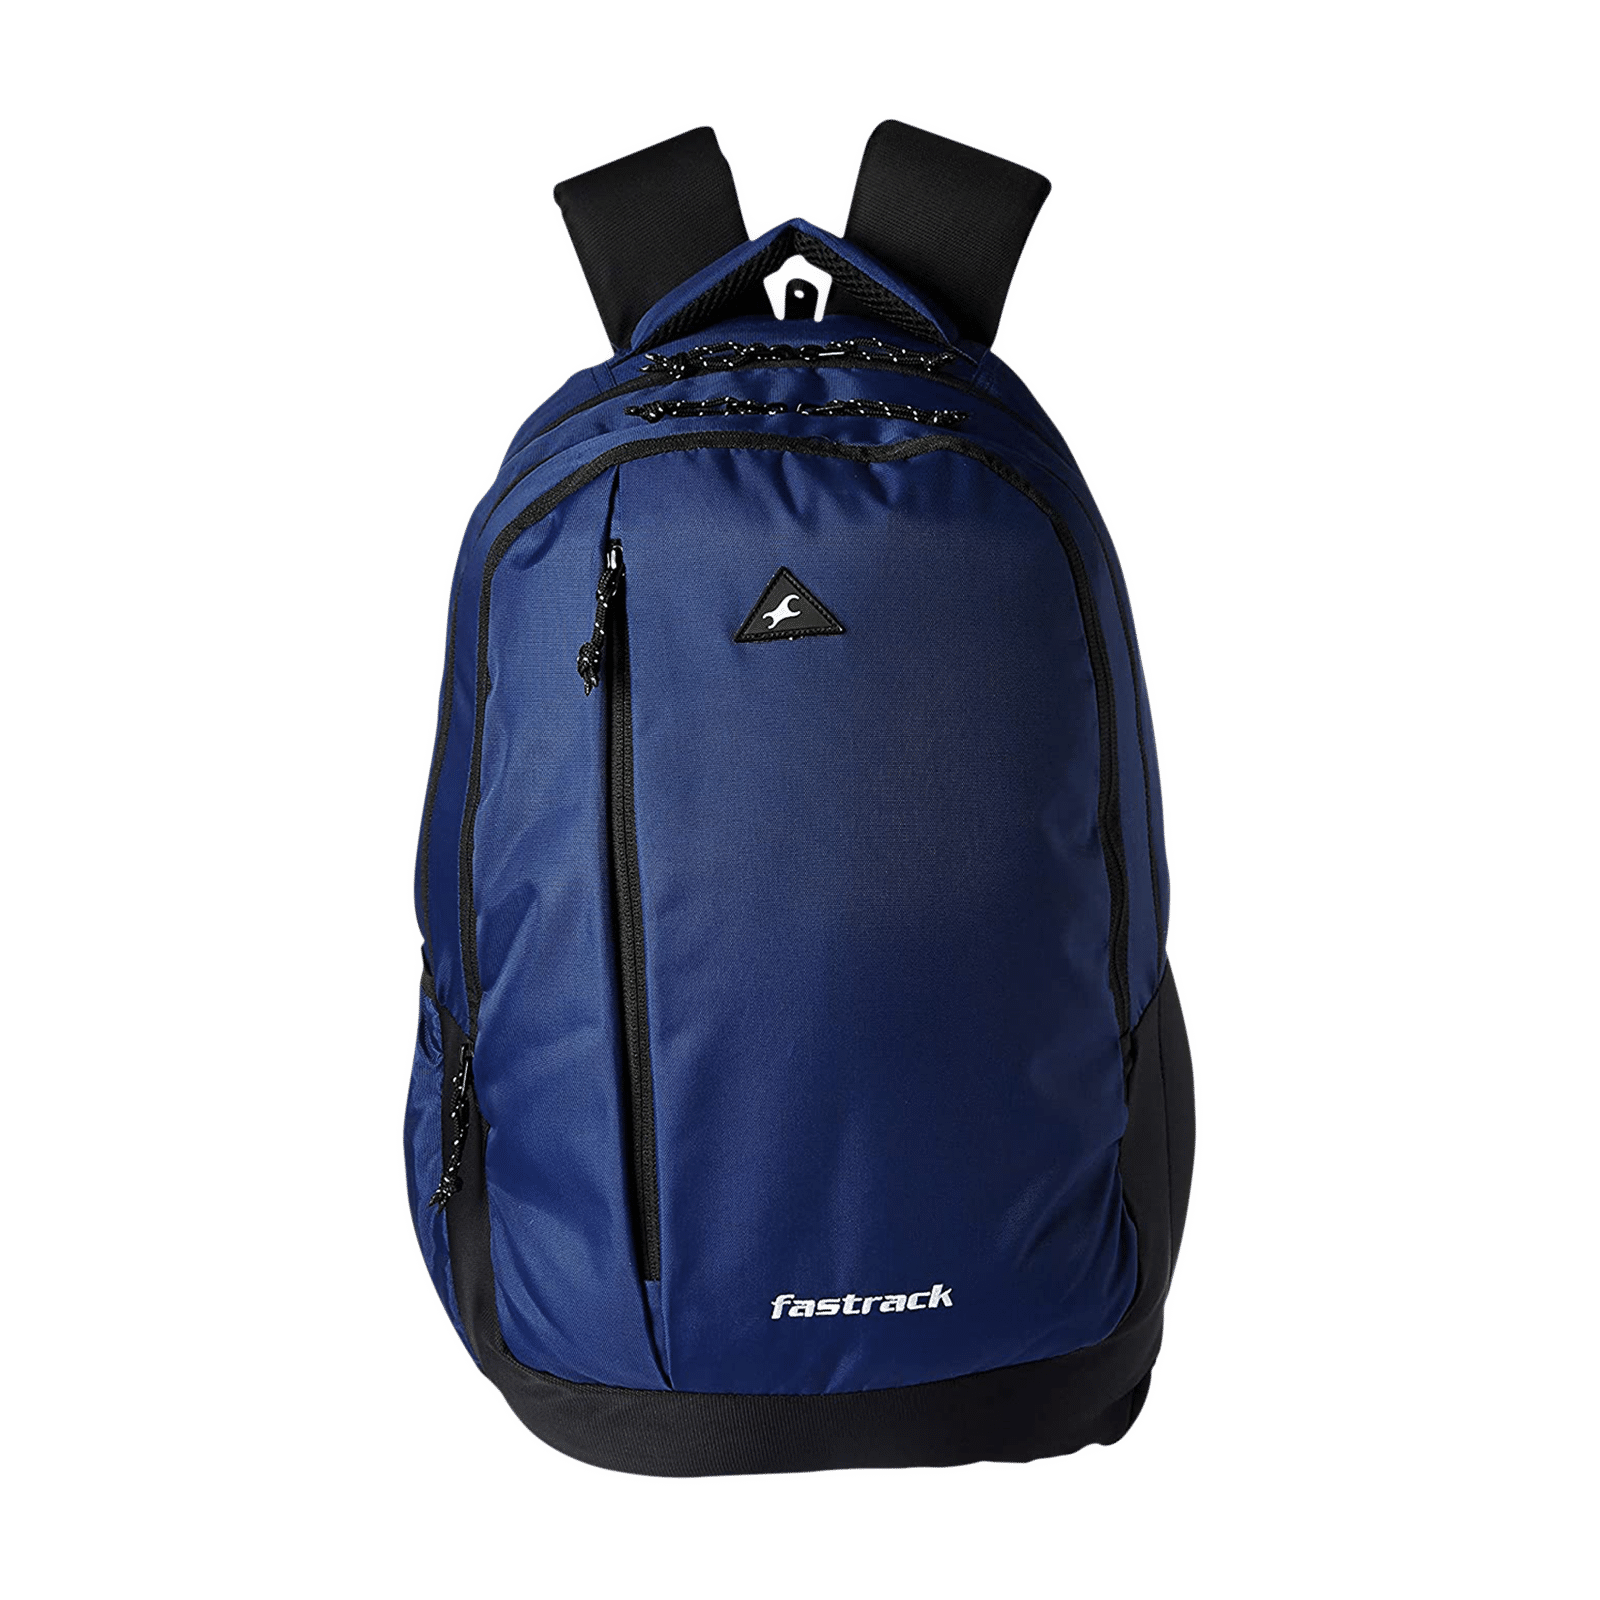 SKYLINE Multi Compartment Laptop Backpack With Padded Back  Adjustable  Shoulder Straps Navy Blue 42 L Laptop Backpack Navy Blue  Price in India   Flipkartcom